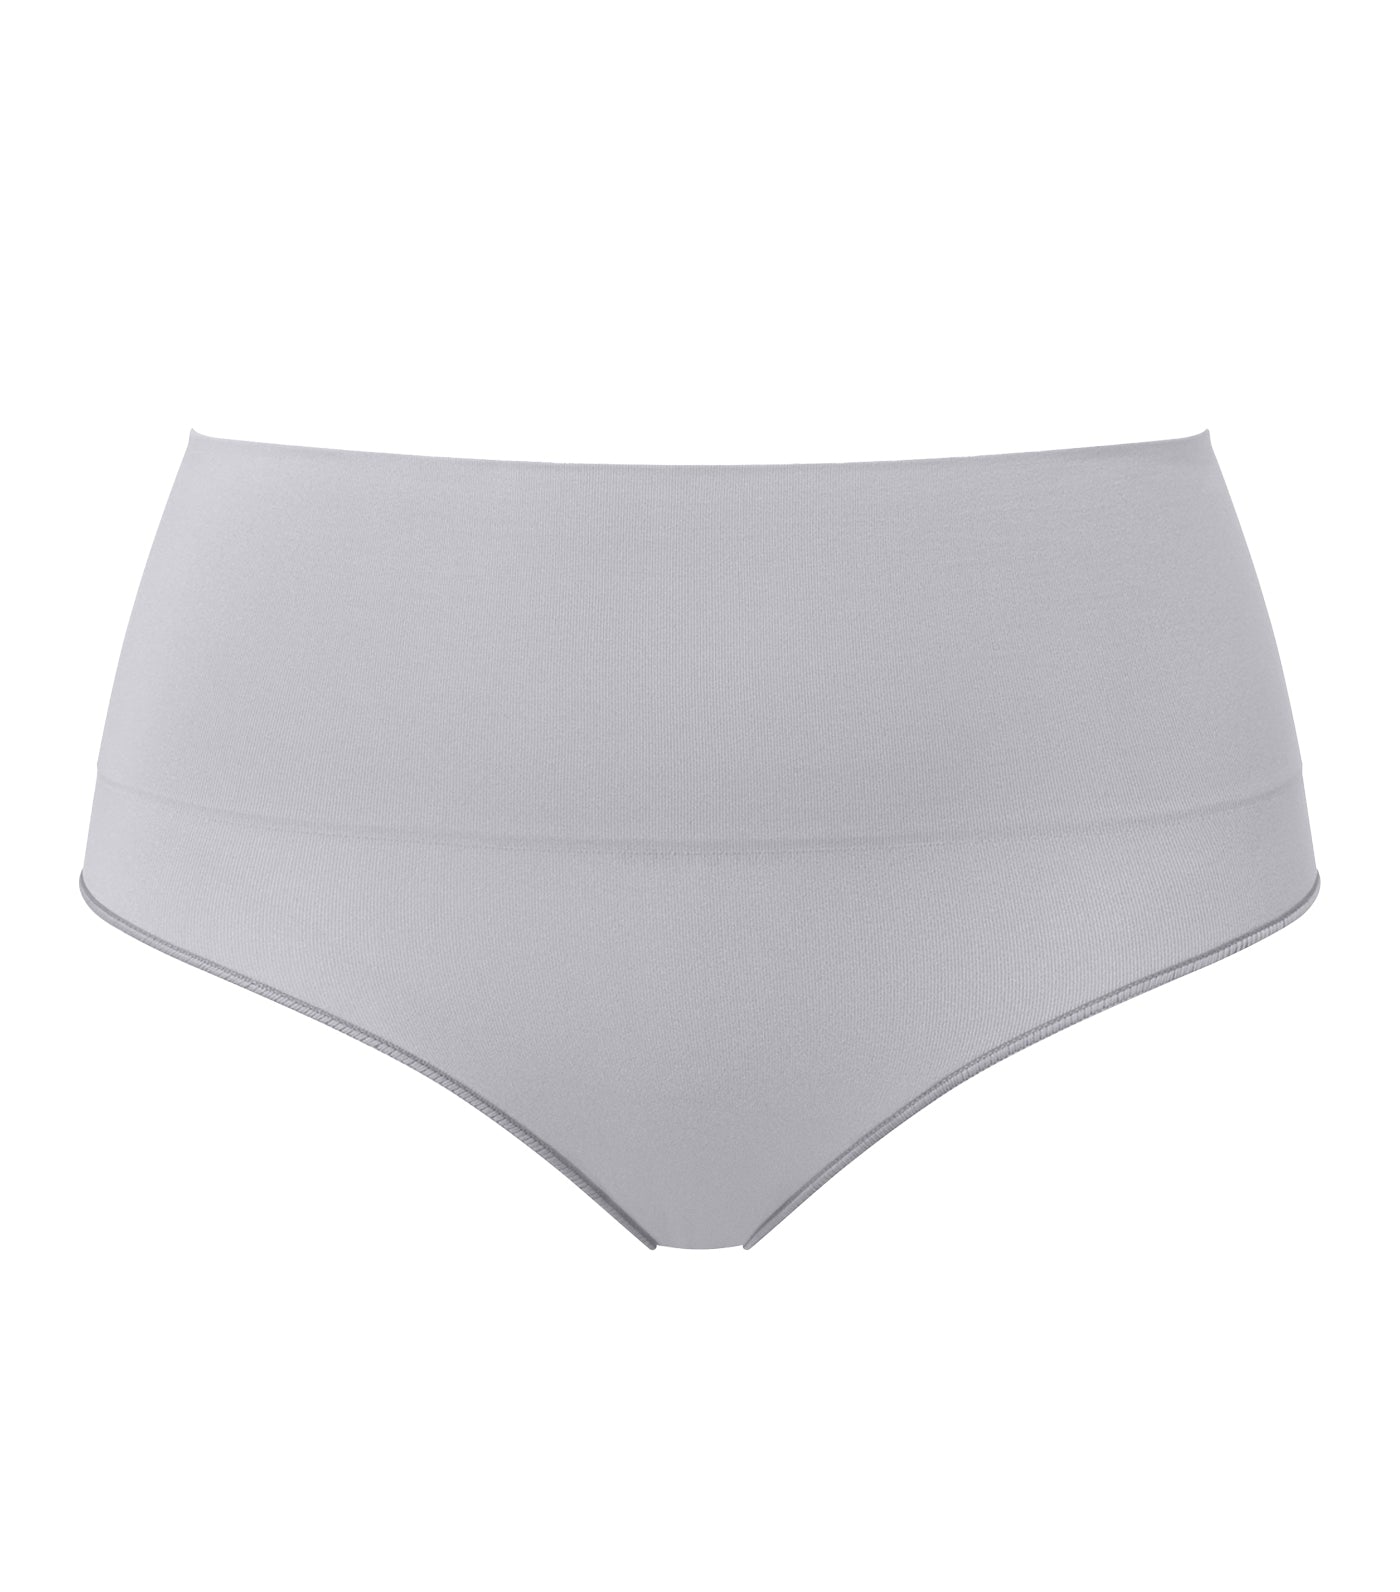 Spanx Everyday Shaping Panties Brief - Size M จากอเมริกา พร้อมส่ง